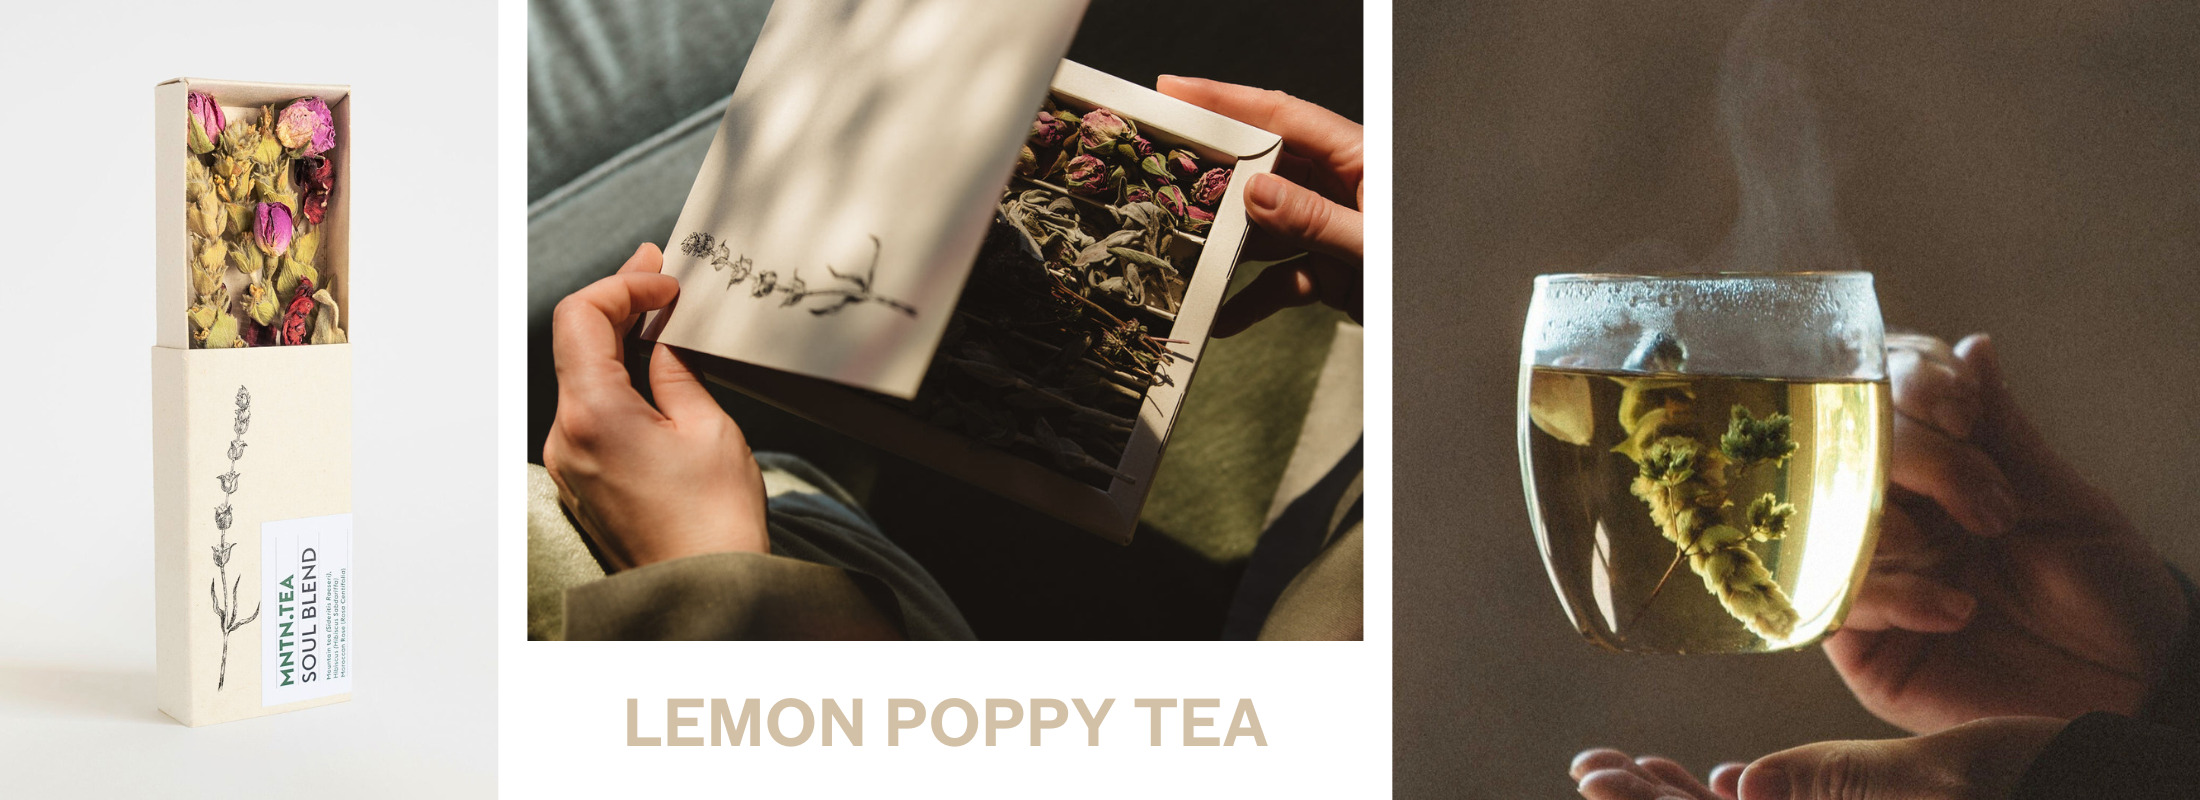 Lemon Poppy Tea